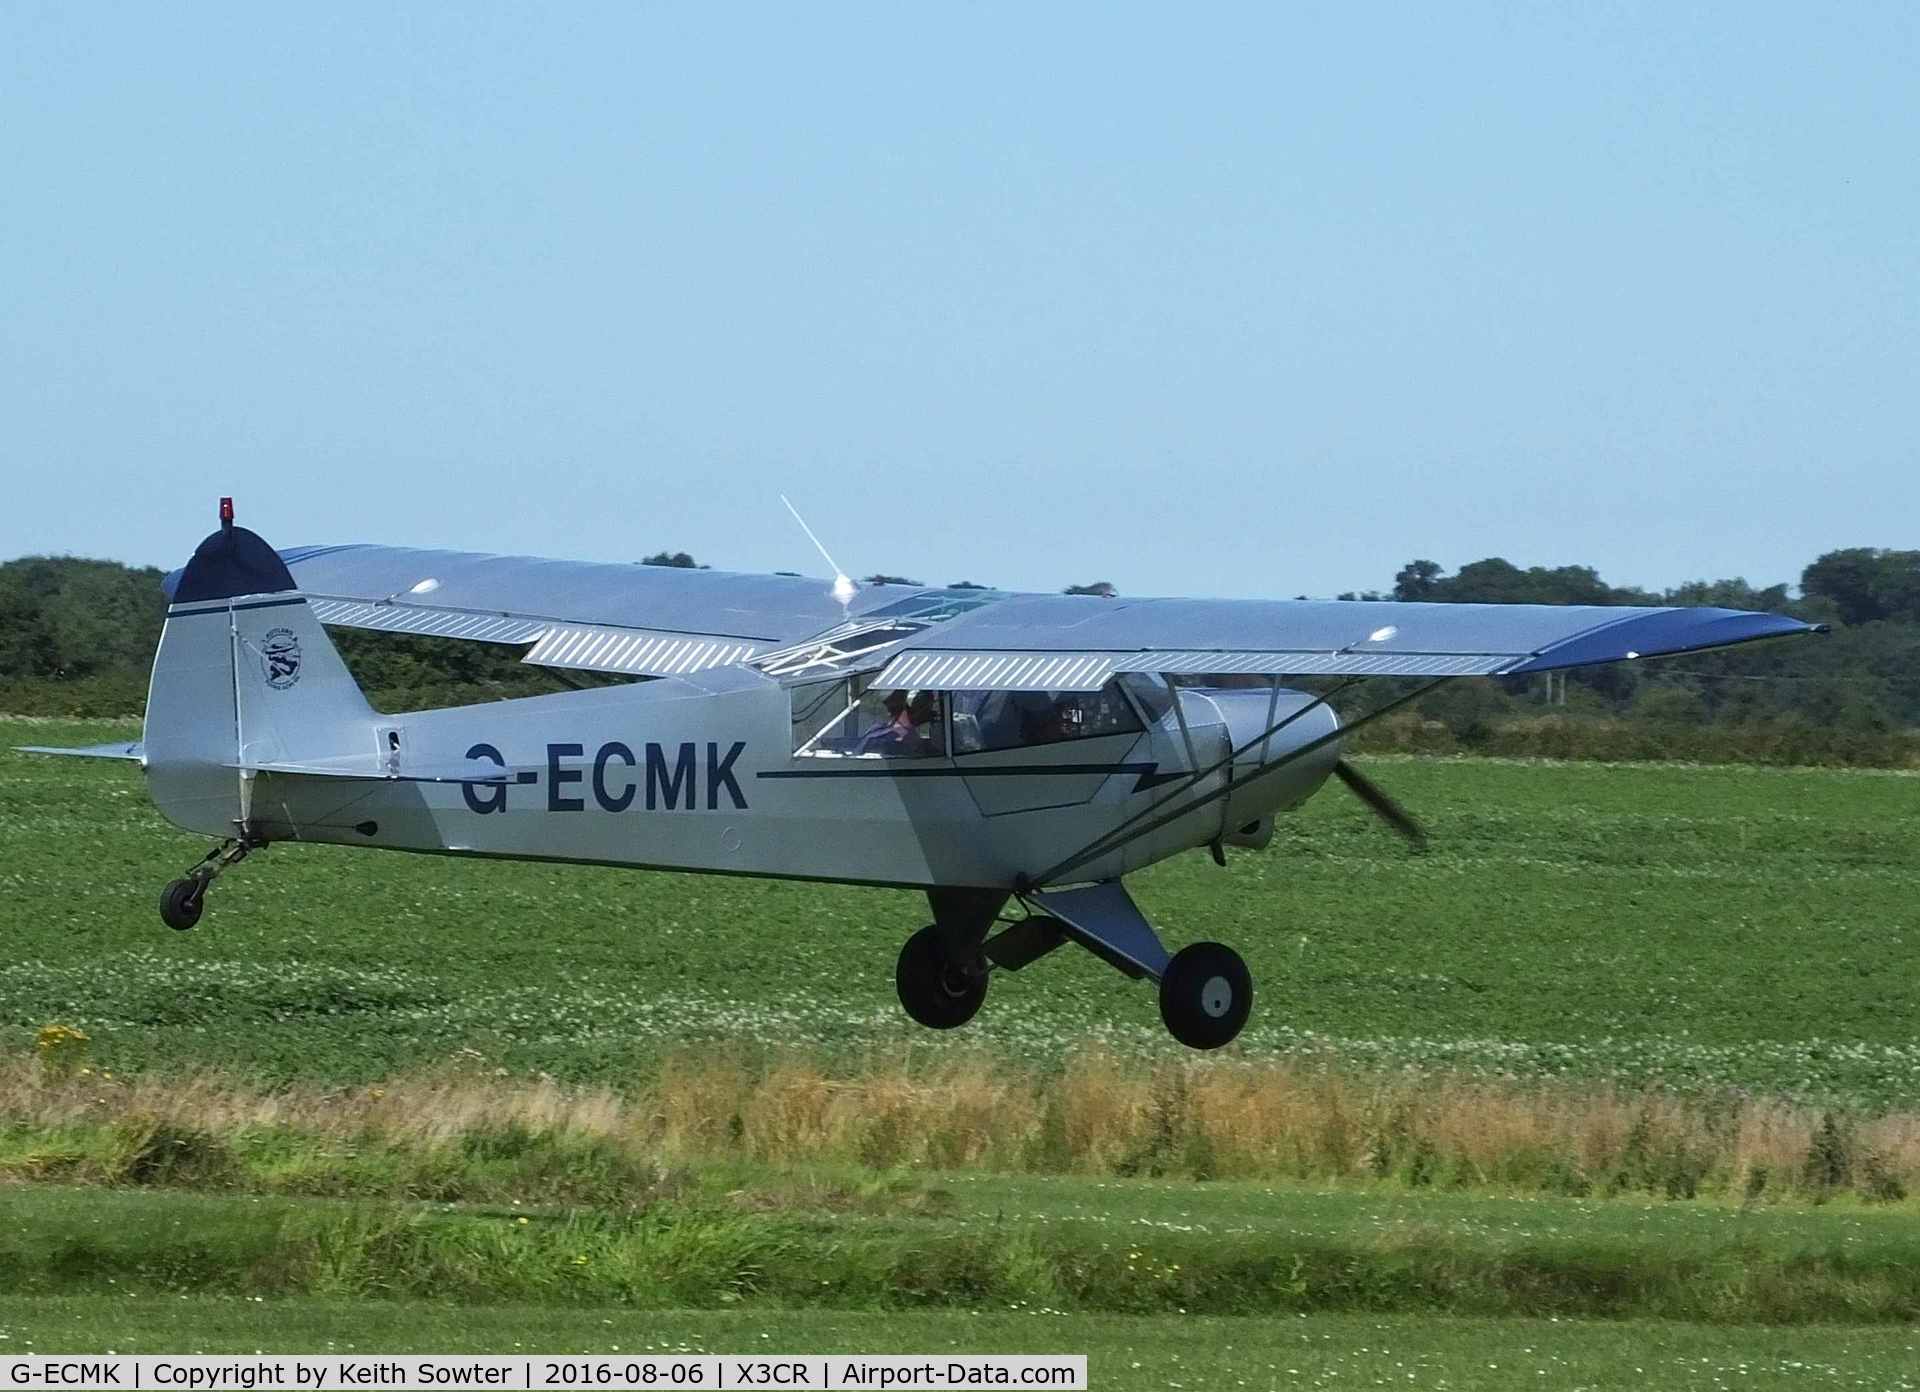 G-ECMK, 1982 Piper PA-18-150 Super Cub C/N 18-8209022, visiting aircraft